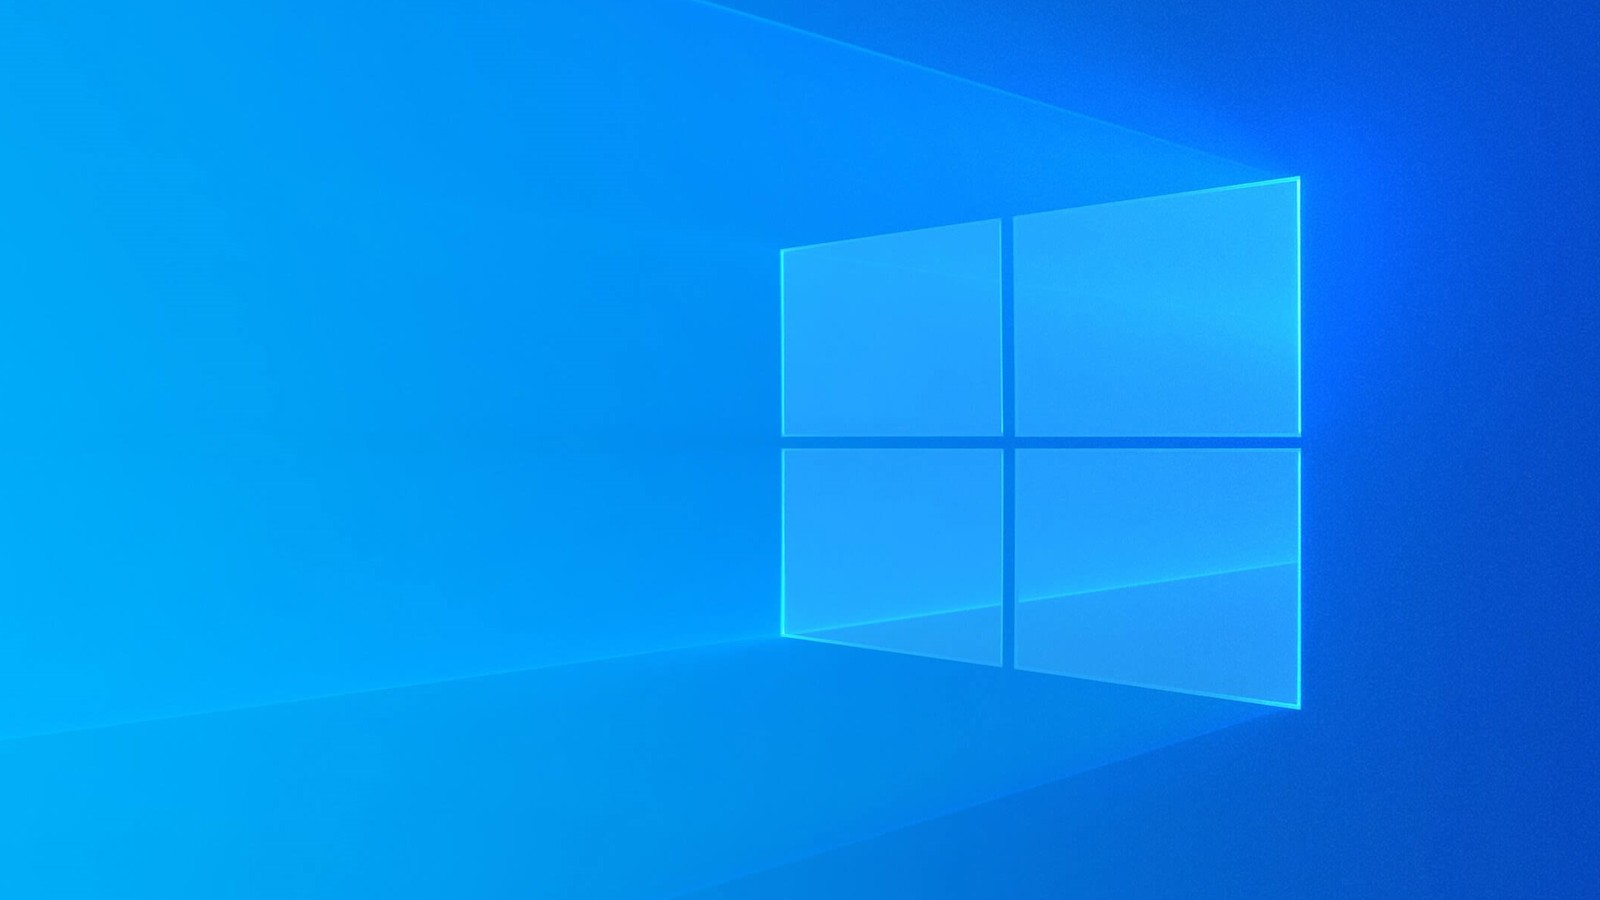 Doživotní licence Windows 10 jen za 290 Kč a MS Office za 515 Kč! Využijte novoroční slevy [sponzorovaný článek]